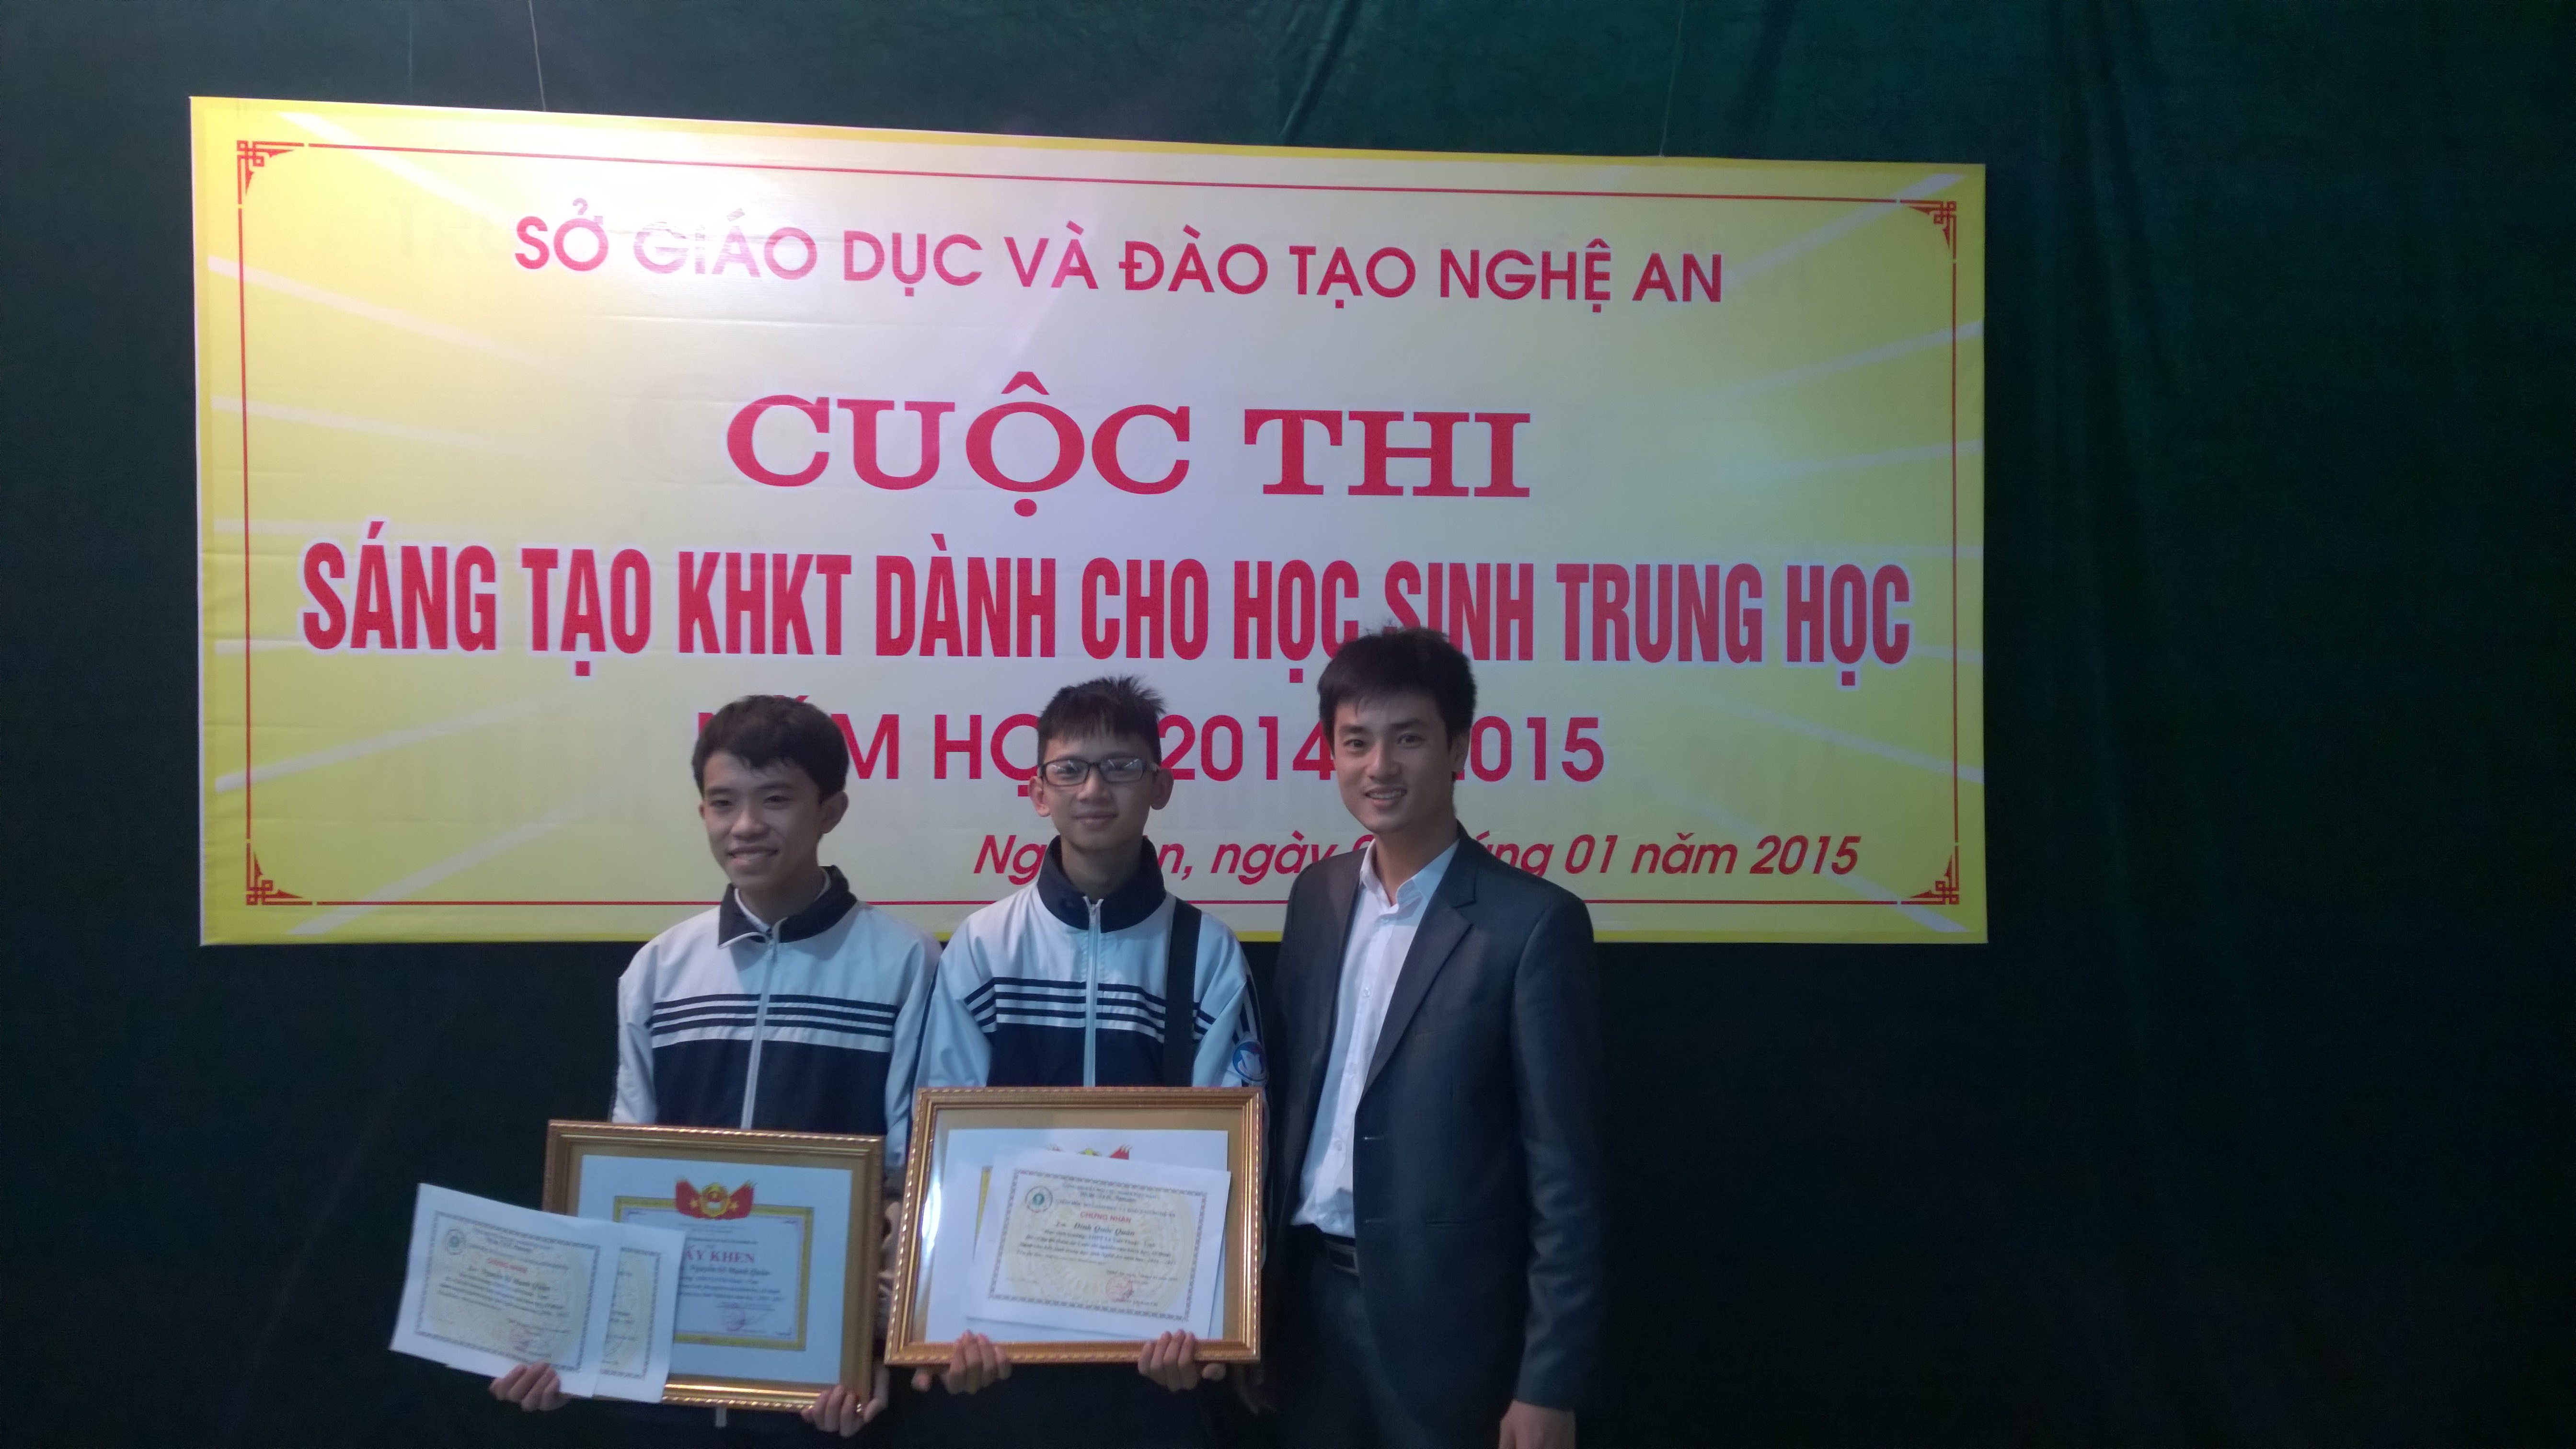 Em Nguyễn Sỹ Mạnh Quân (trái), em Đinh Quôc Quân (giữa) cùng thầy giáo Hồ Văn Minh vui mừng khi biết kết quả cuộc thi